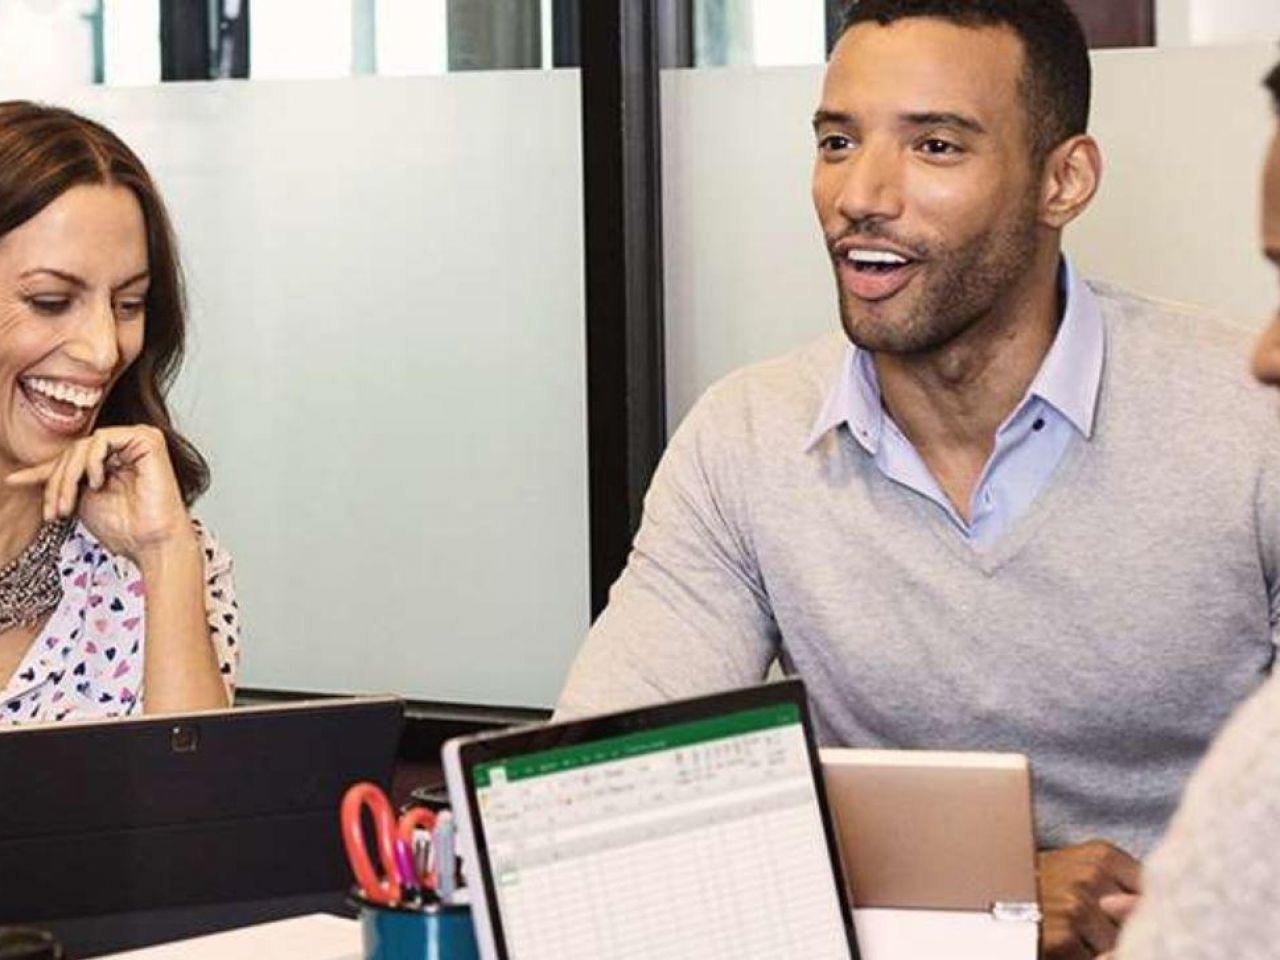 マイクロソフト、会議室管理サービス「Managed Meeting Rooms」発表--Teams新機能も